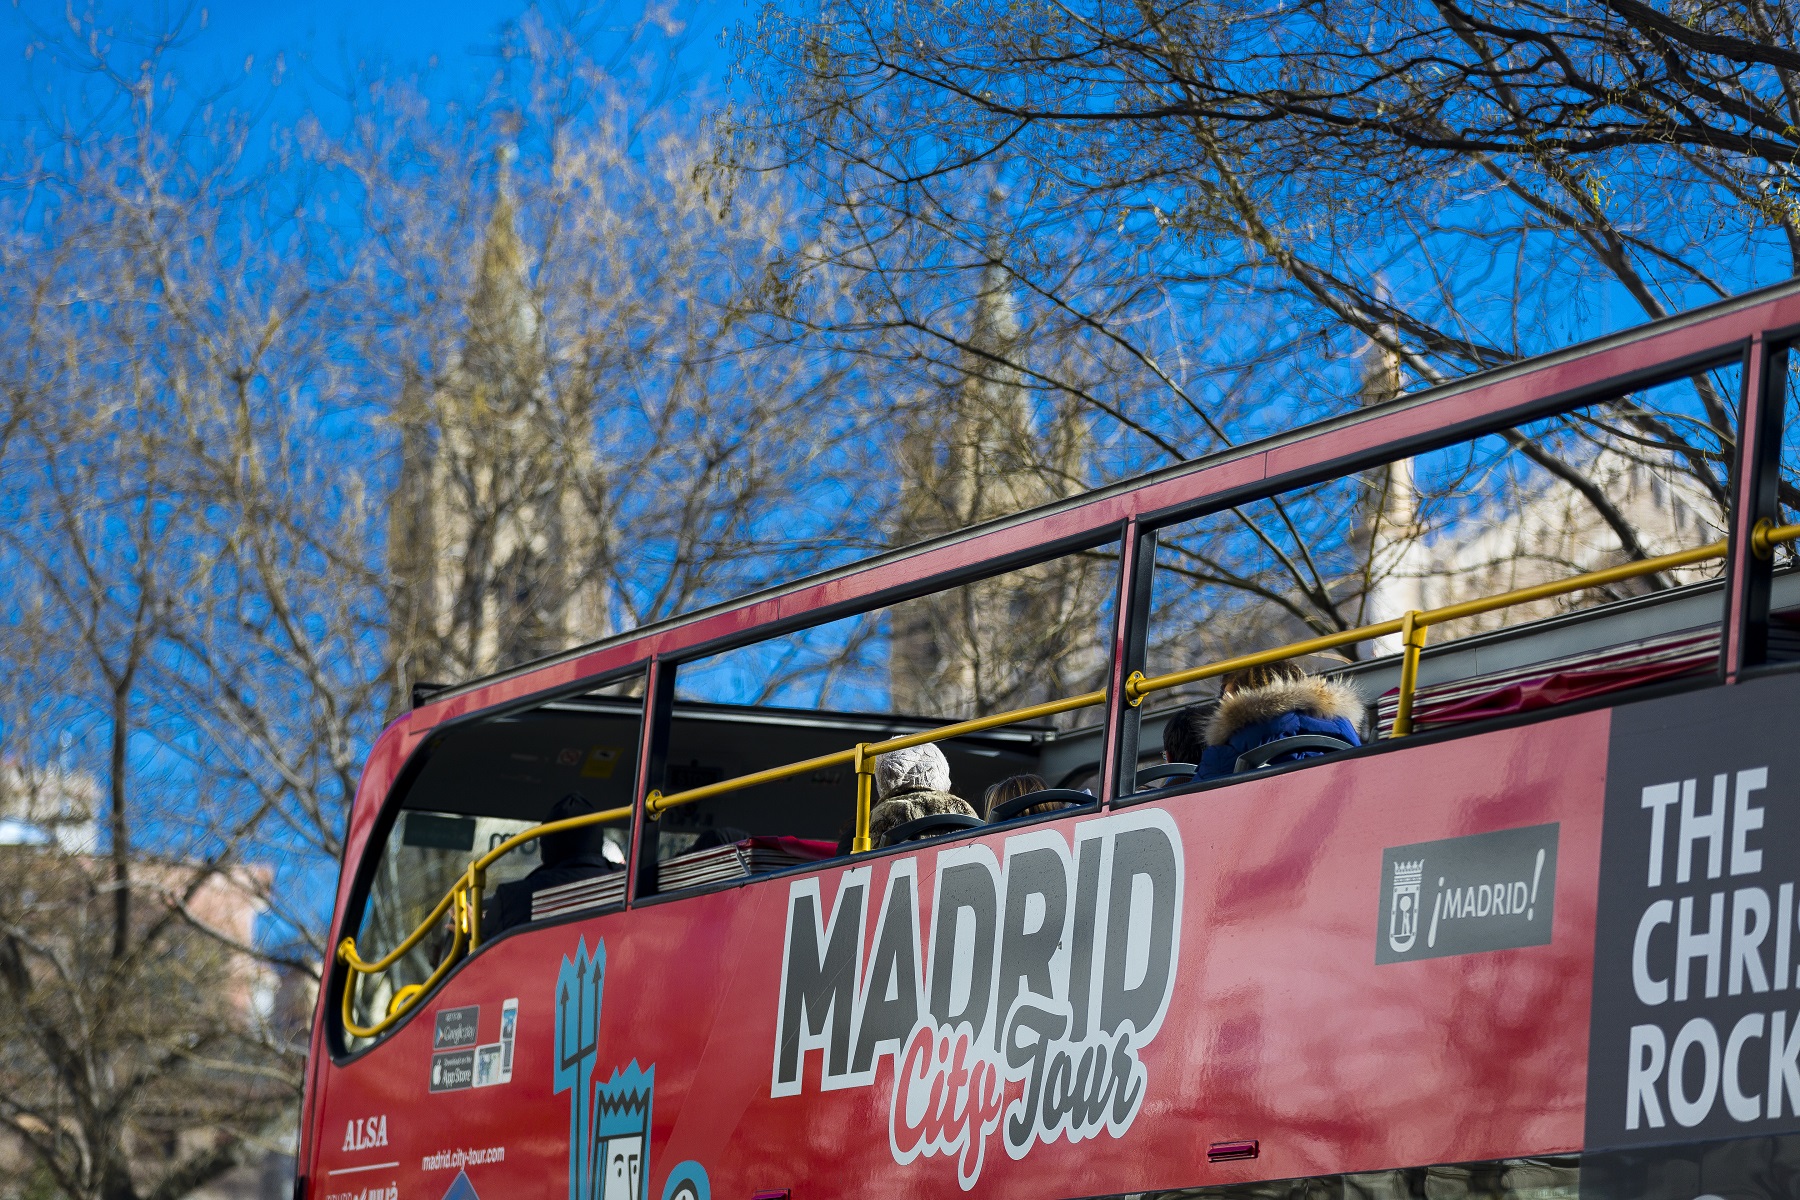 馬德里市隨上隨下巴士之旅